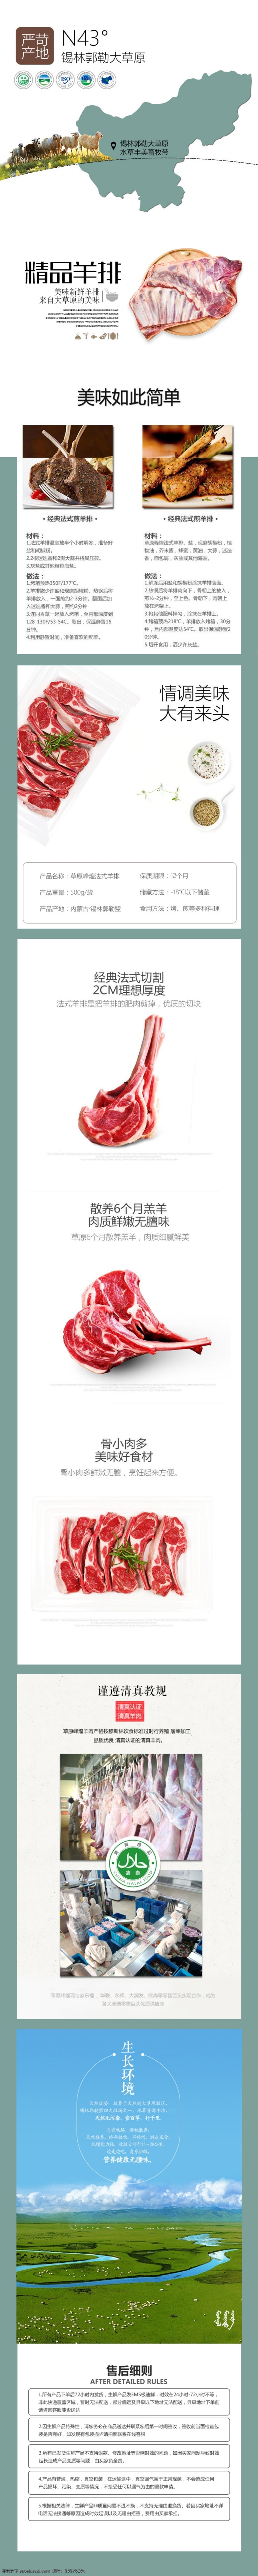 牛羊肉 产品 详情 页 模板 淘宝 天猫 肉类 详情页 原产地